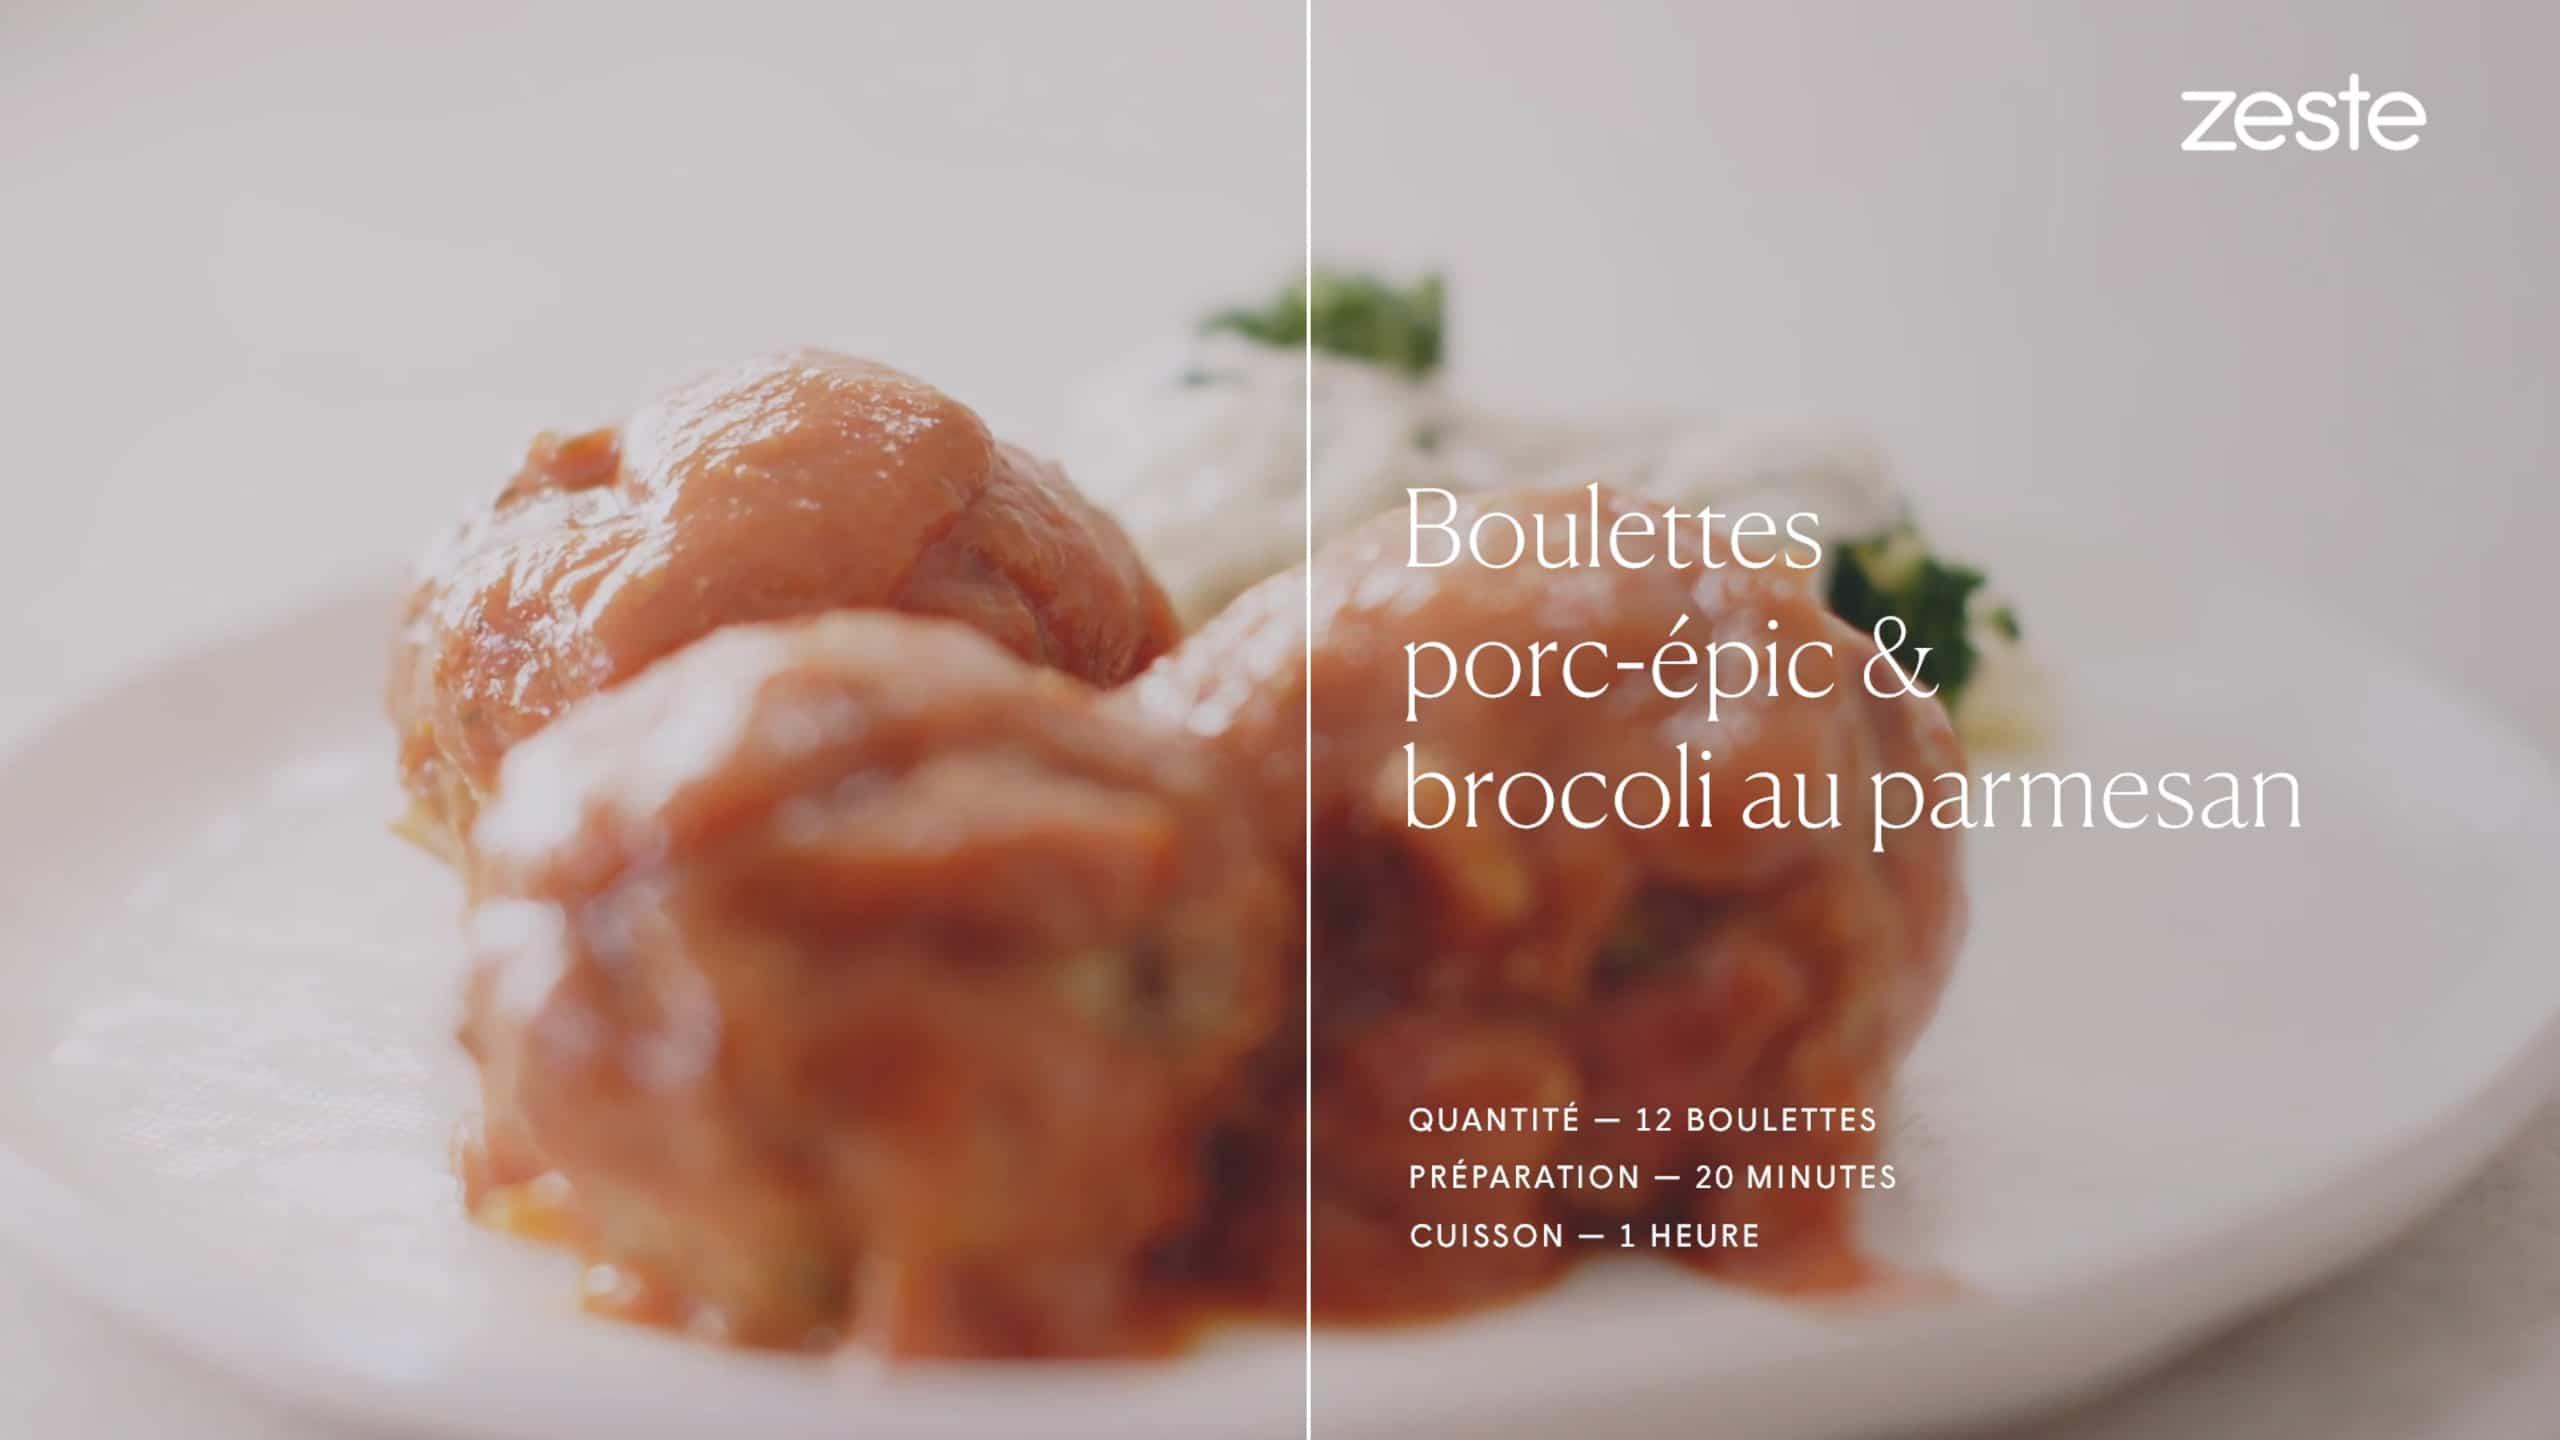 Boulettes porc-épic & brocoli au parmesan